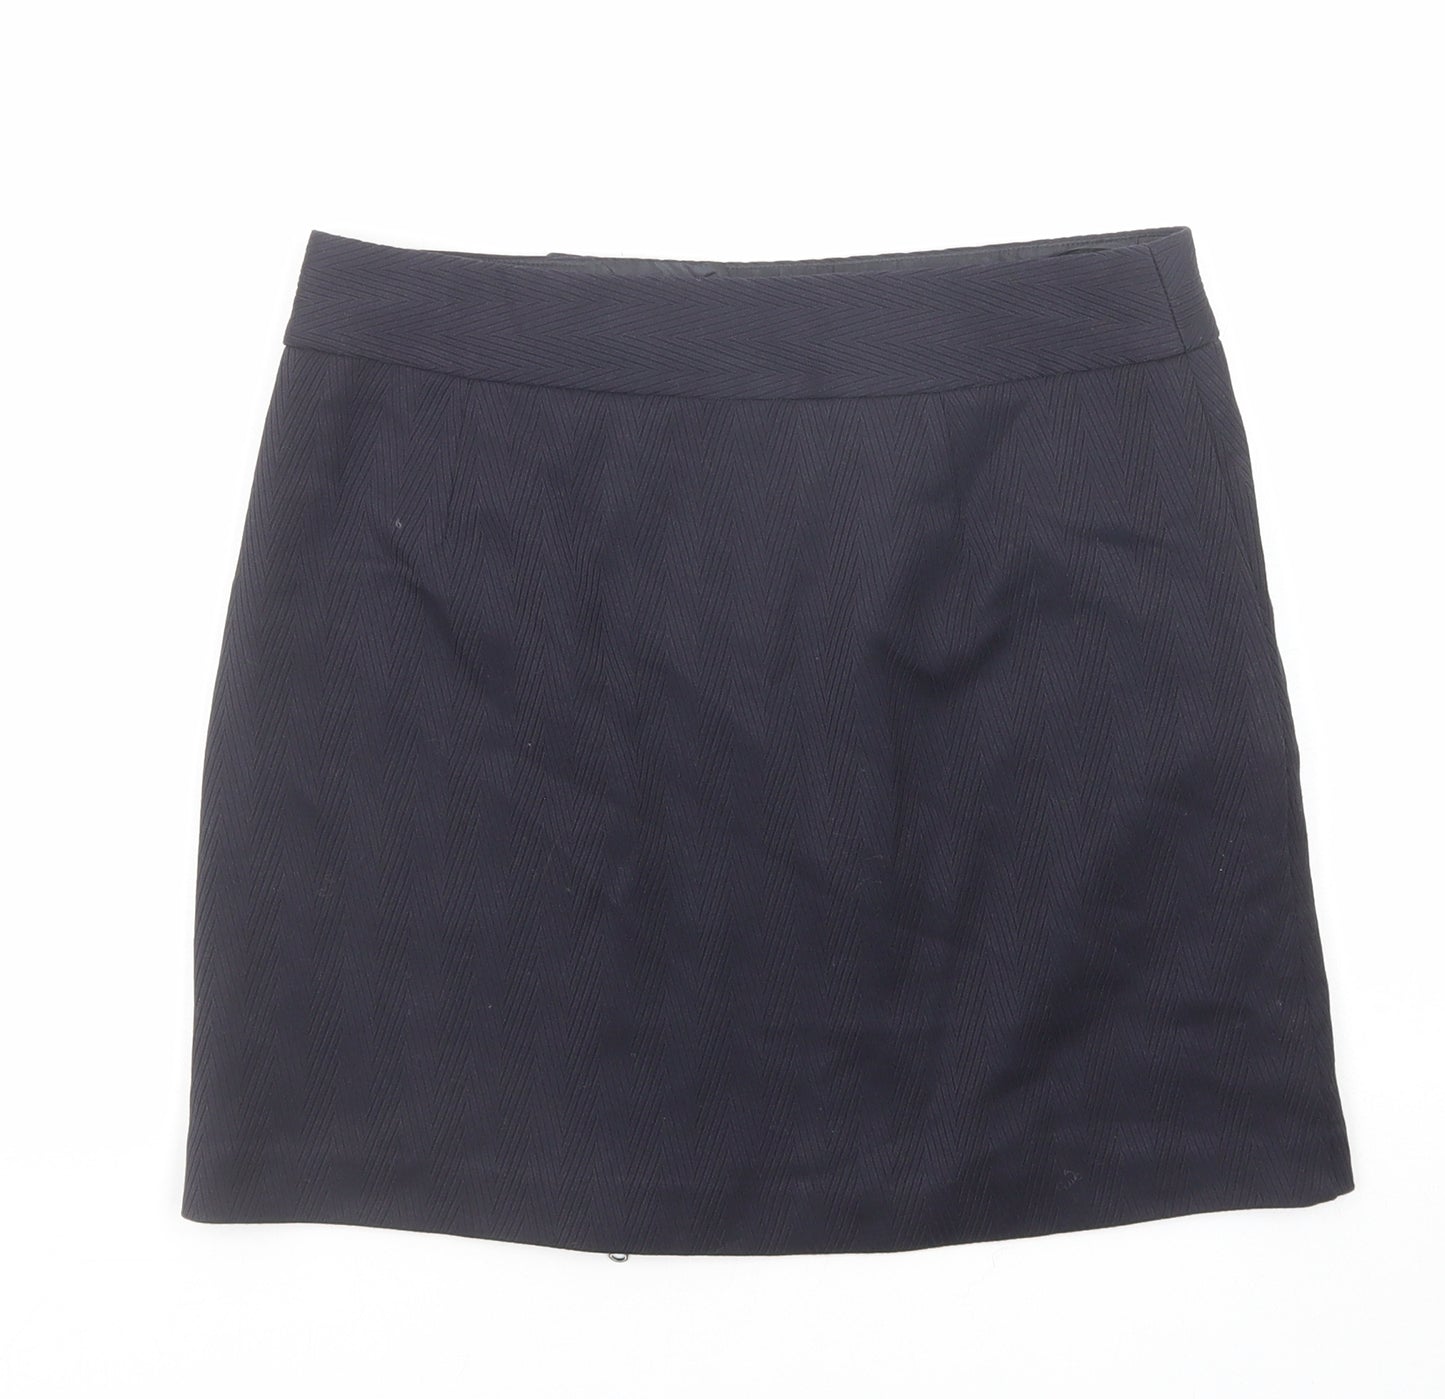 NEXT Womens Blue Polyester A-Line Skirt Size 8 Zip